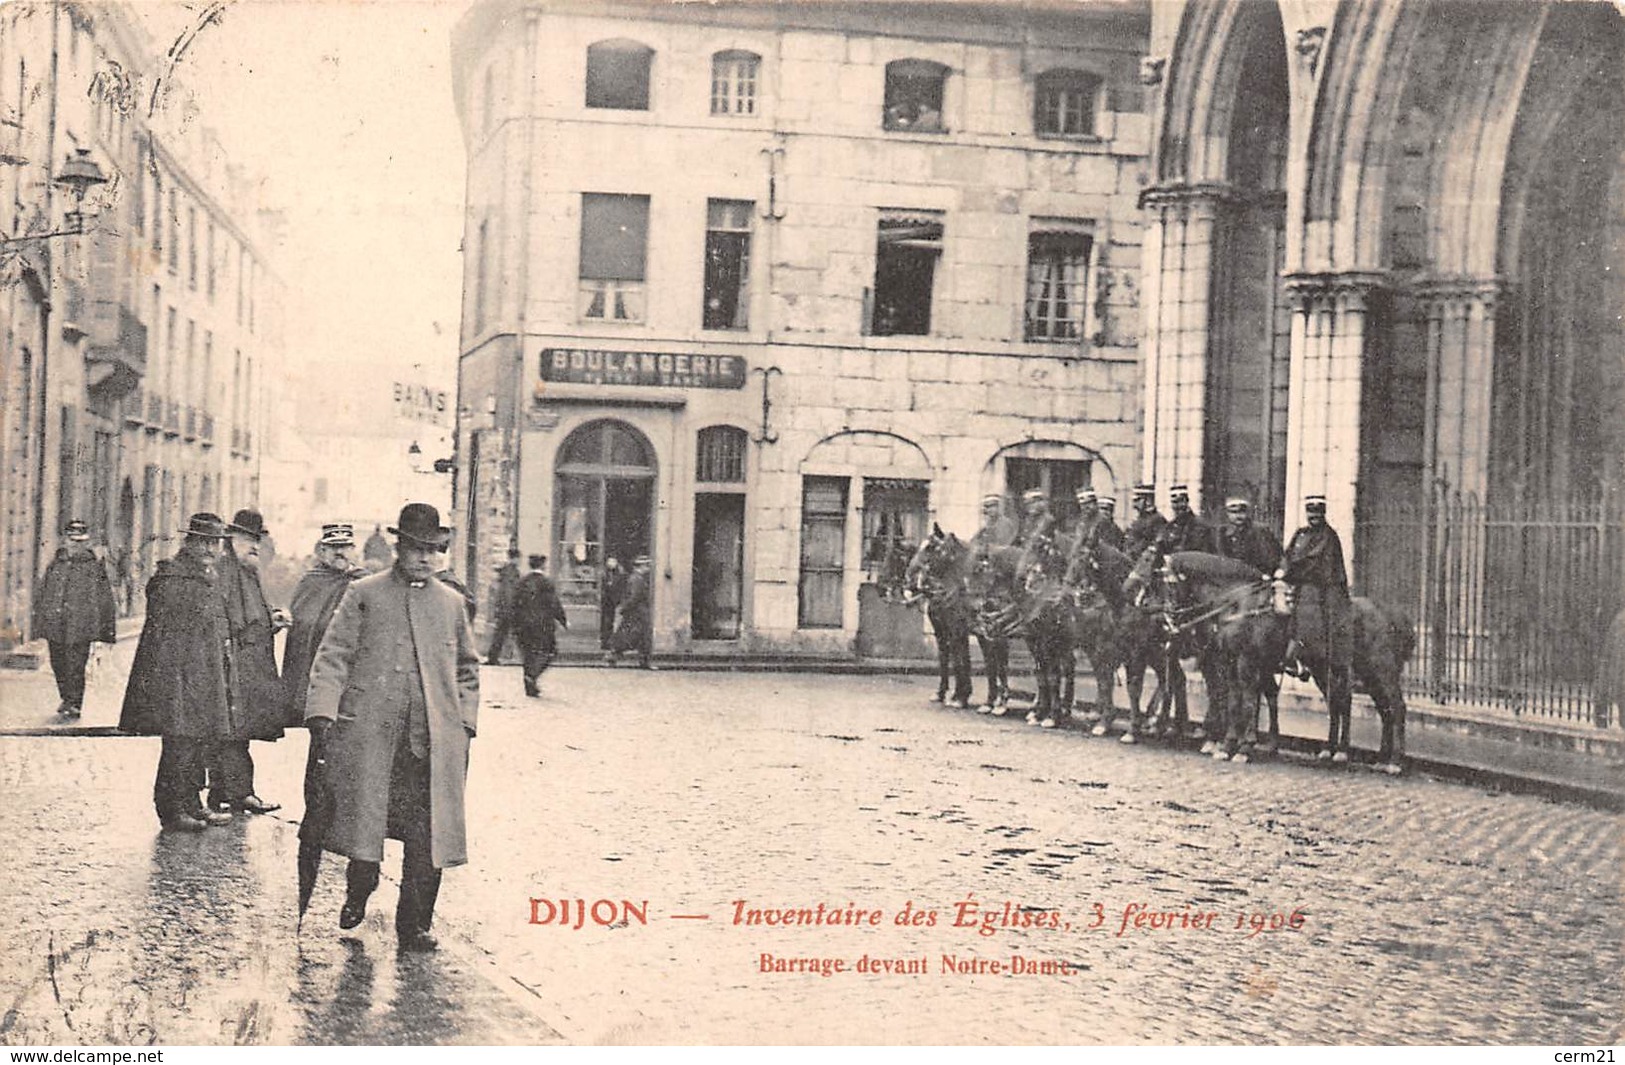 21 - Dijon - Les Gendarmes En Action - Barrage Devant Notre-Dame - Inventaire Des Eglises 3 Février 1906 - Dijon